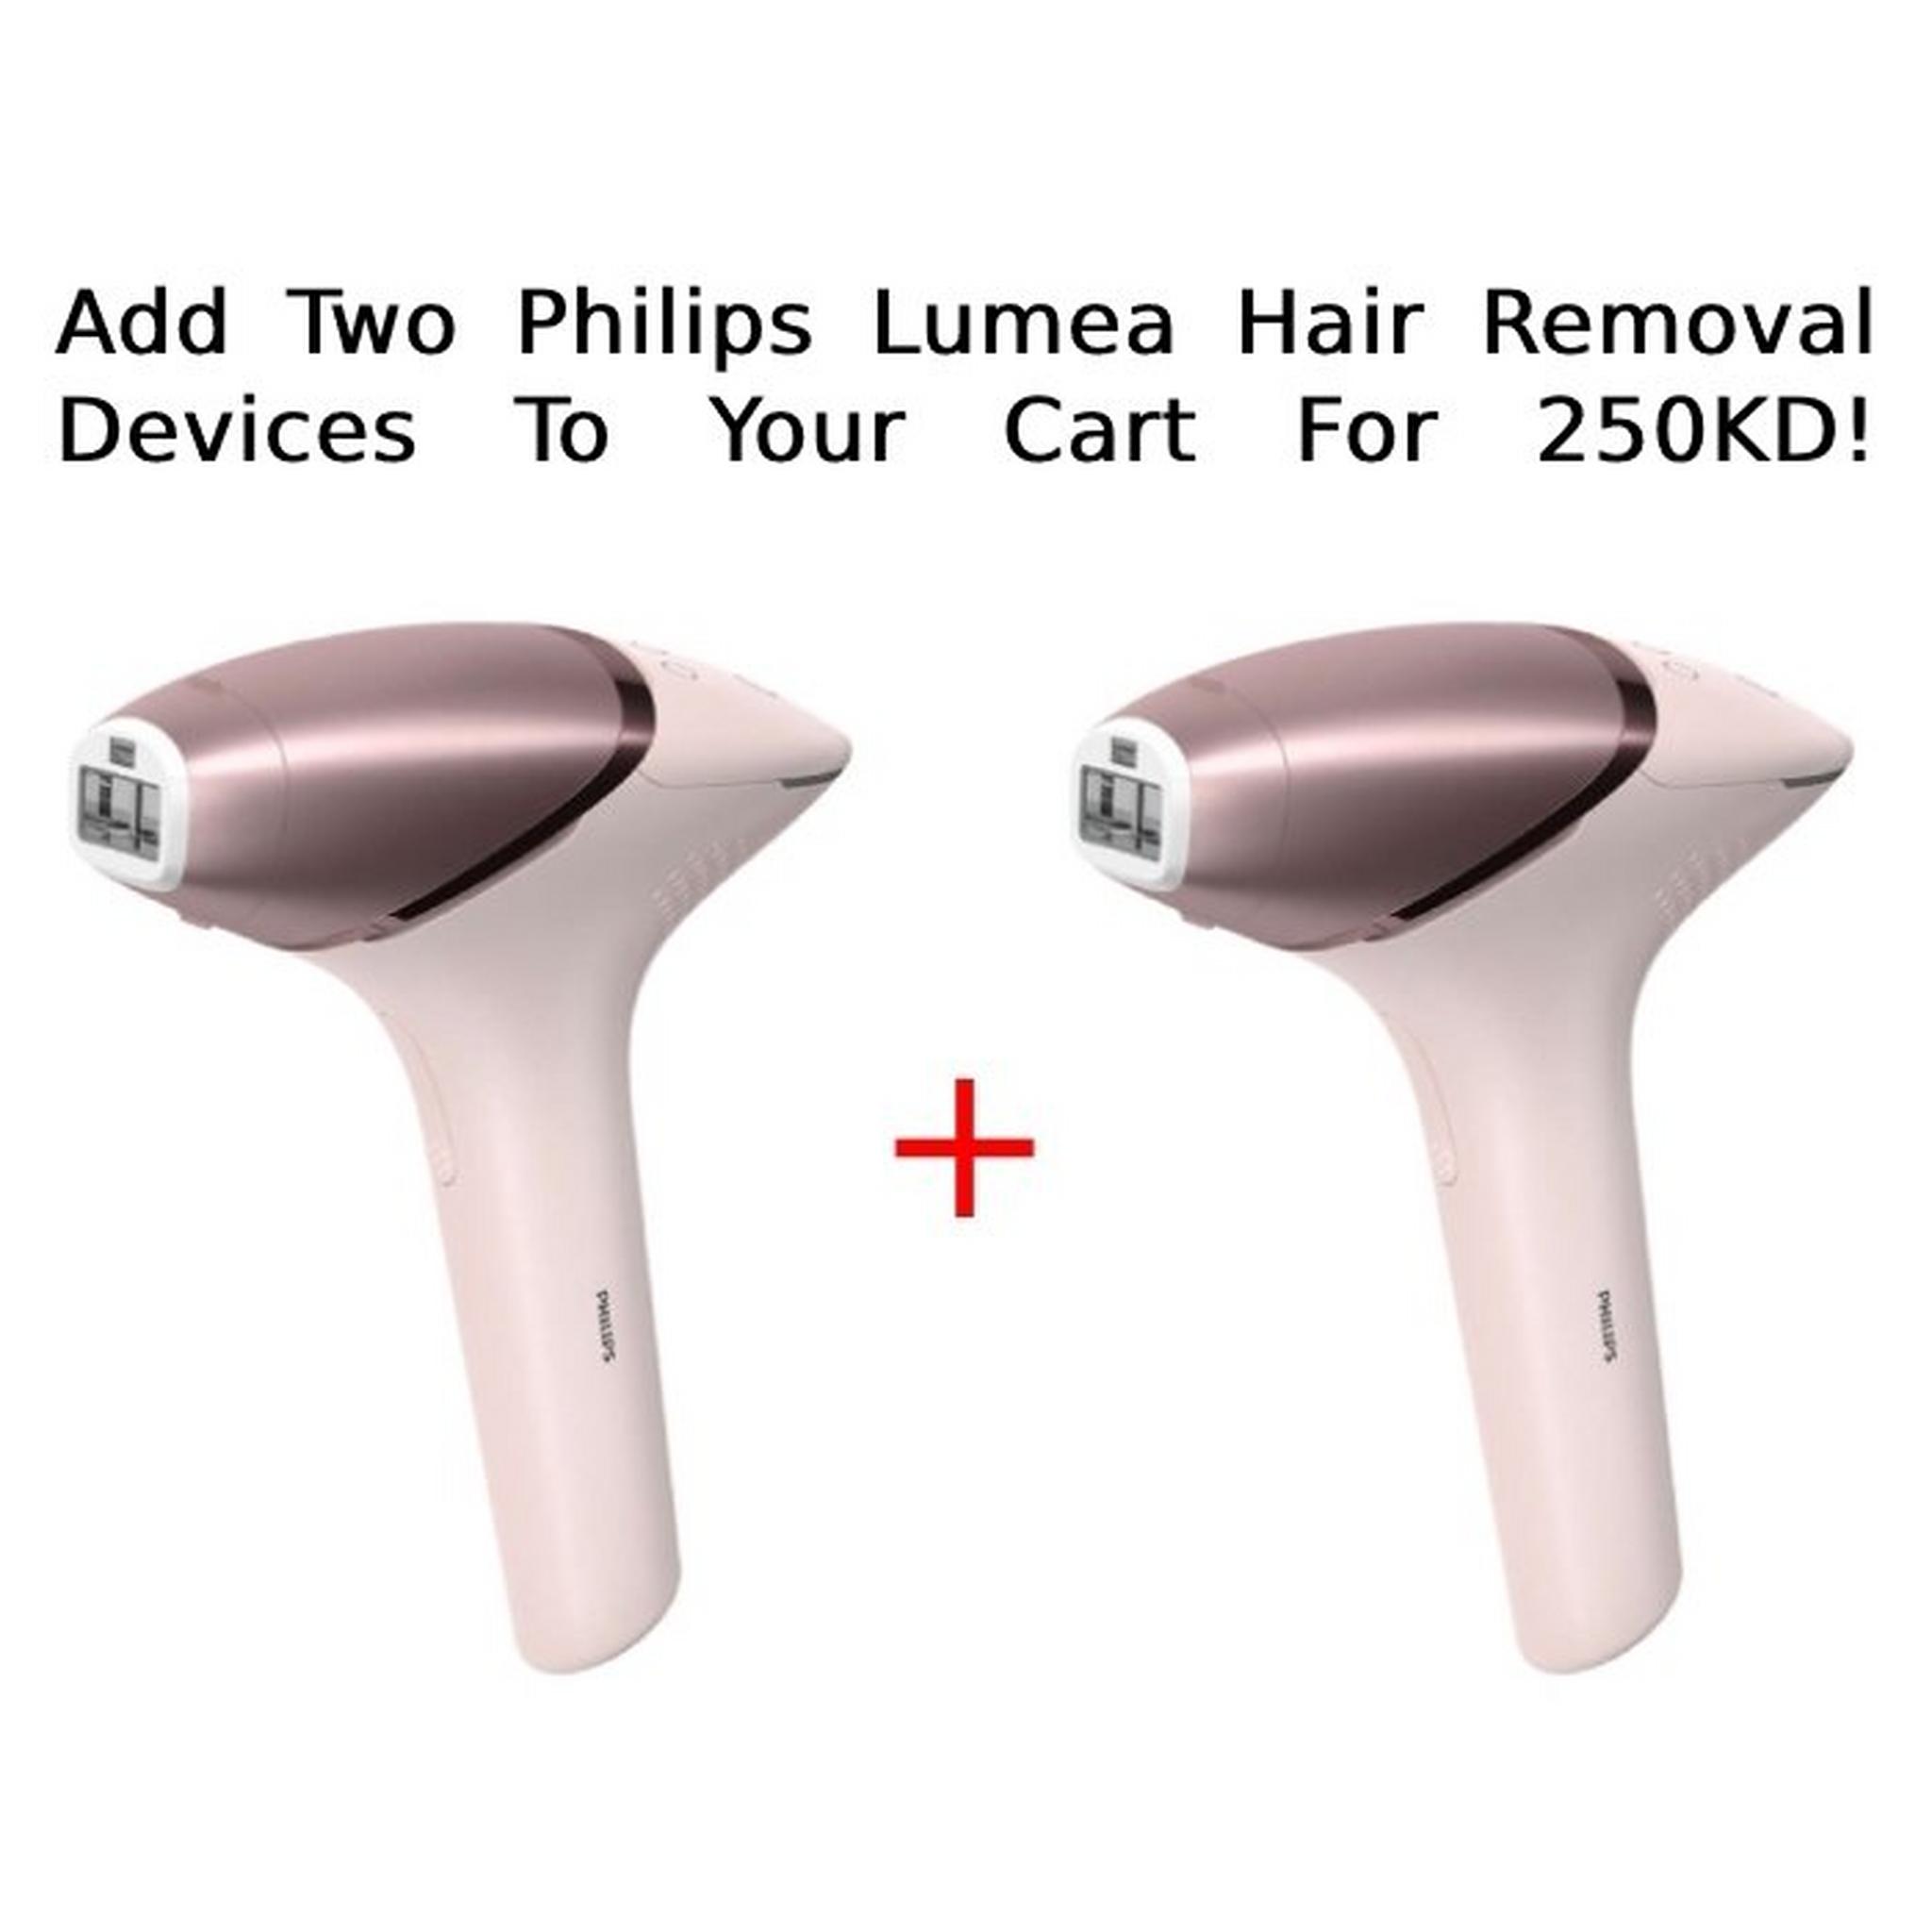 فيليبس لوميا برستيج الماكينة اللاسلكية لإزالة الشعر بتقنية الضوء النبضي المكثف - ٤ ملحقات (BRI958/60)